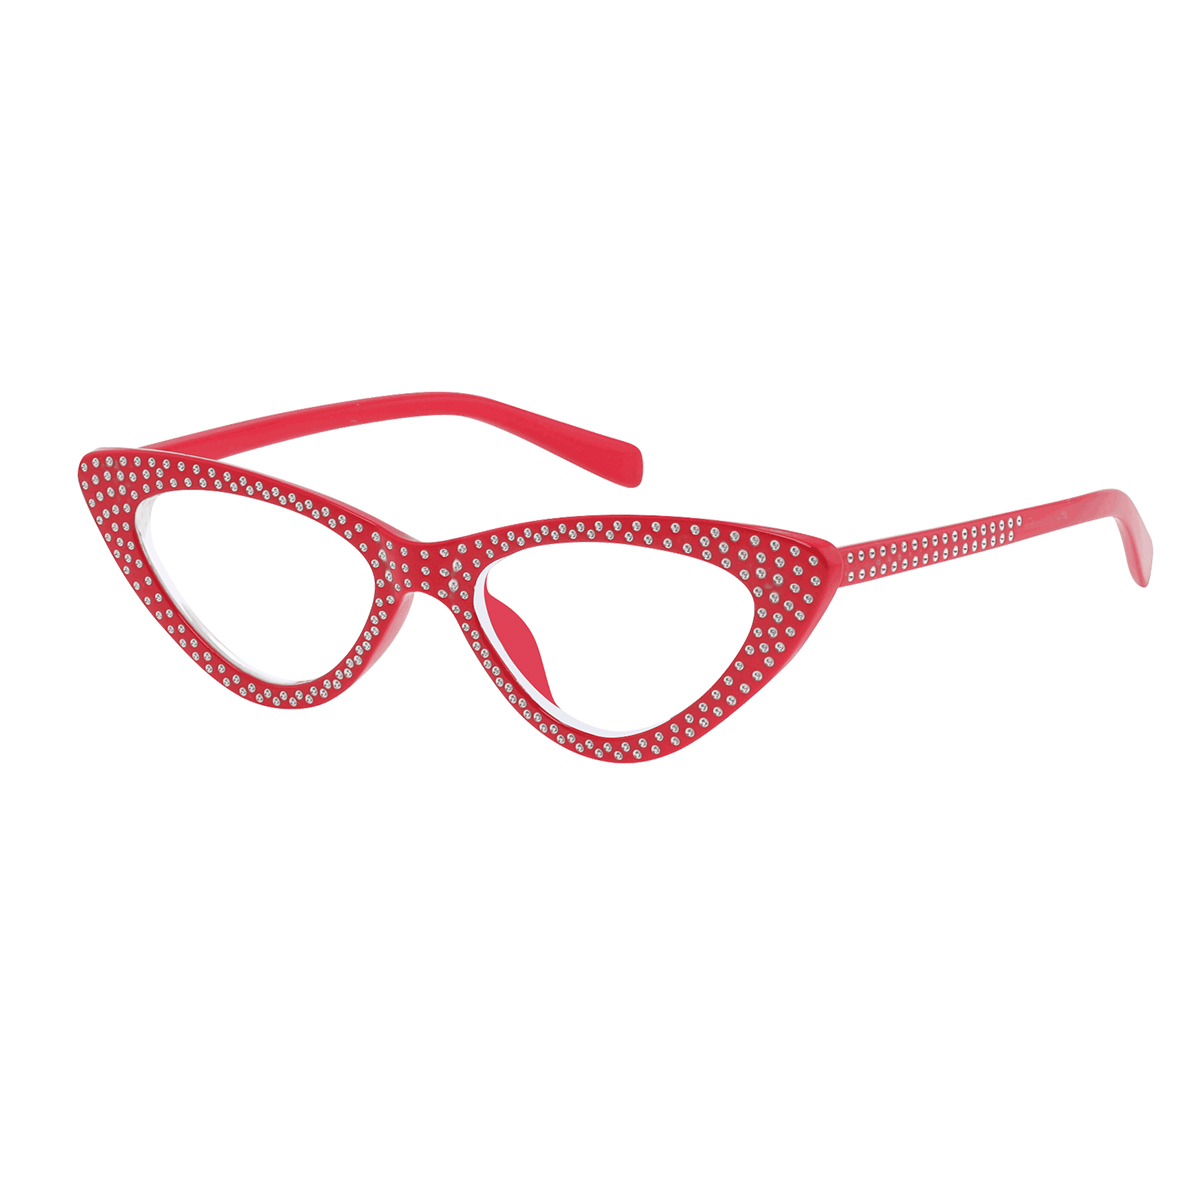 Cirta - Cat-eye Red Reading Glasses for Women